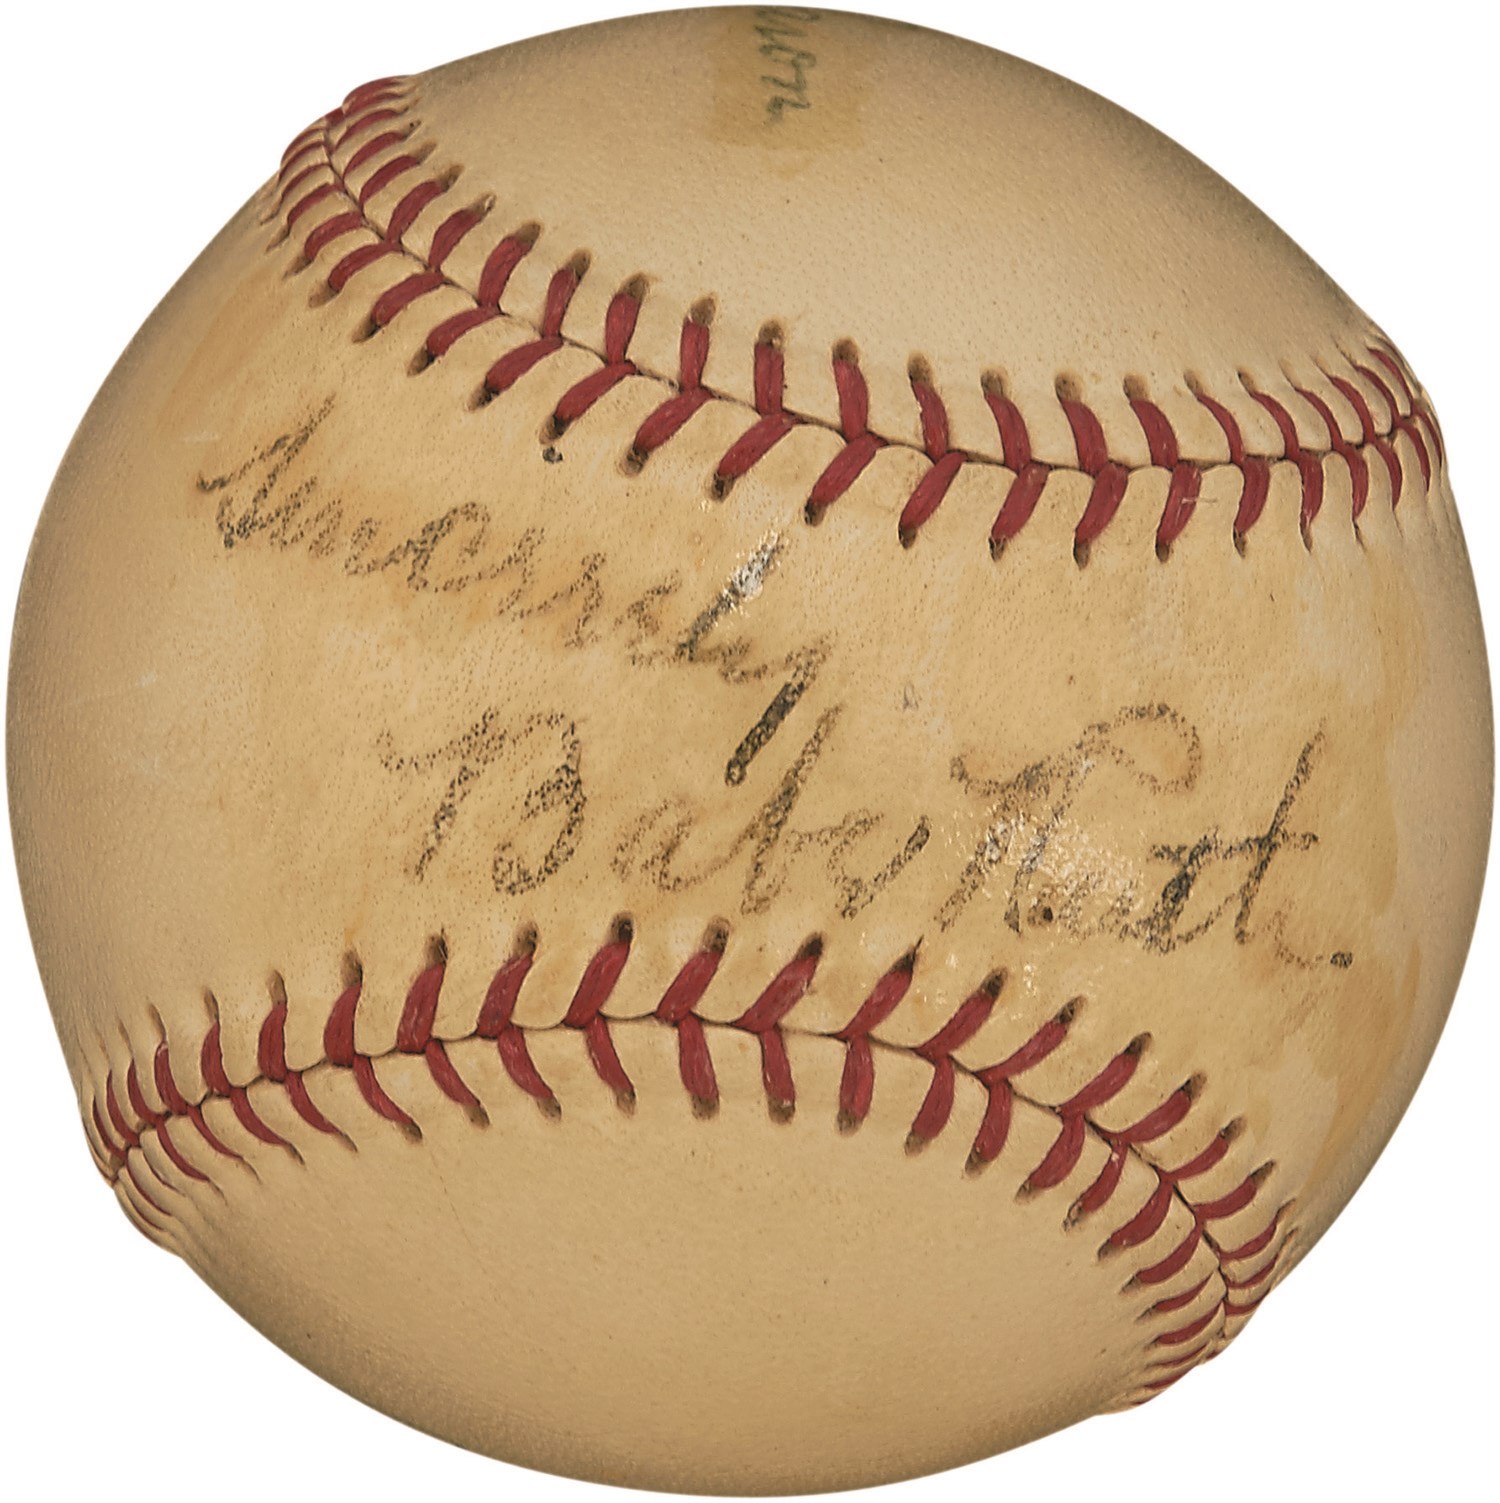 - Holy Trinity Signed Baseball: Babe Ruth, Roger Maris & Hank (PSA)